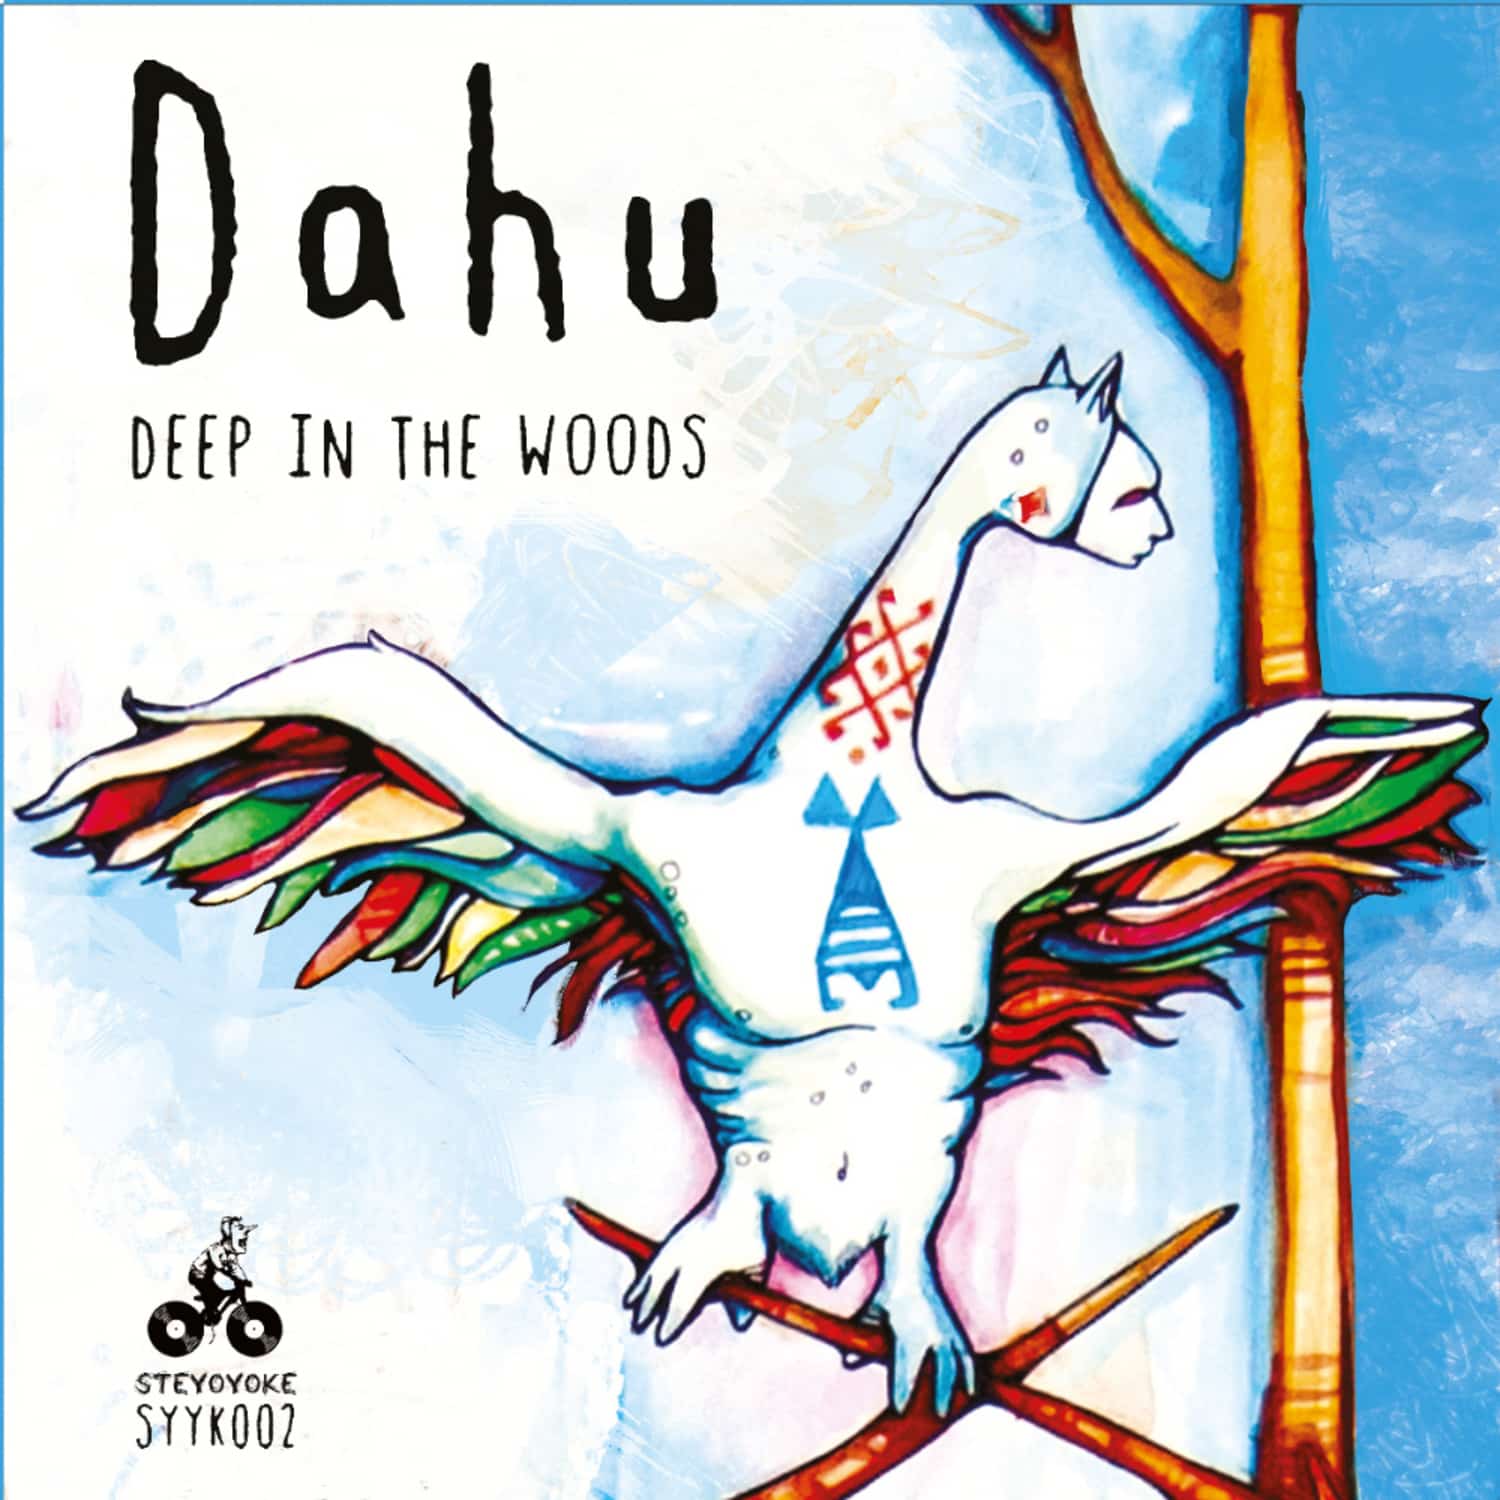 Dahu - DEEP IN THE WOODS